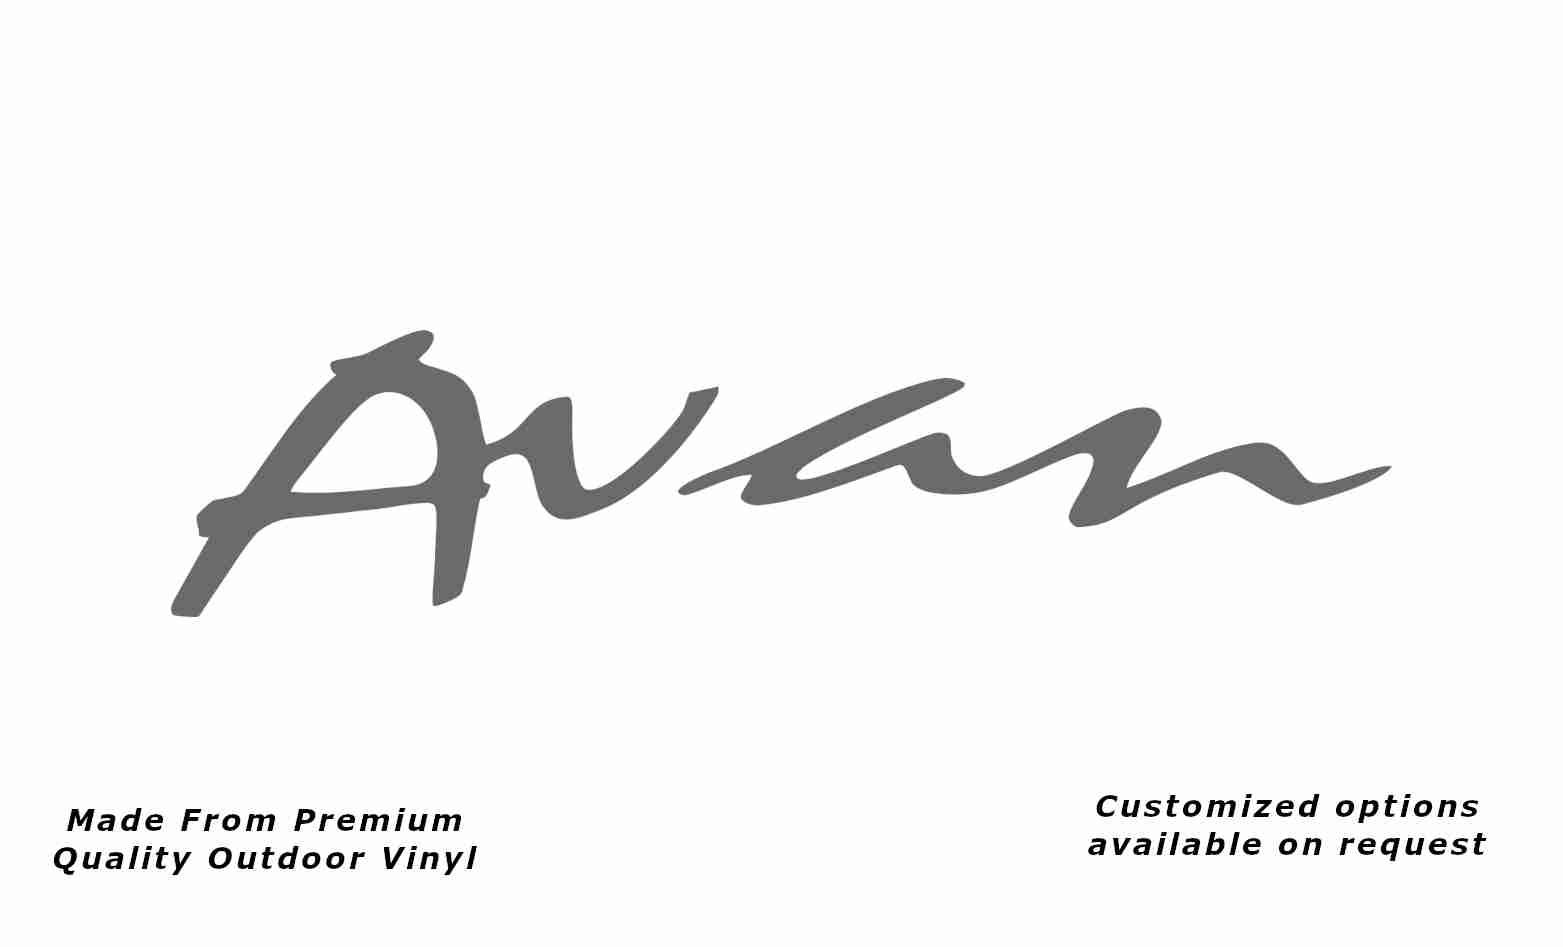 Avan caravan replacement vinyl decal sticker in silver grey.